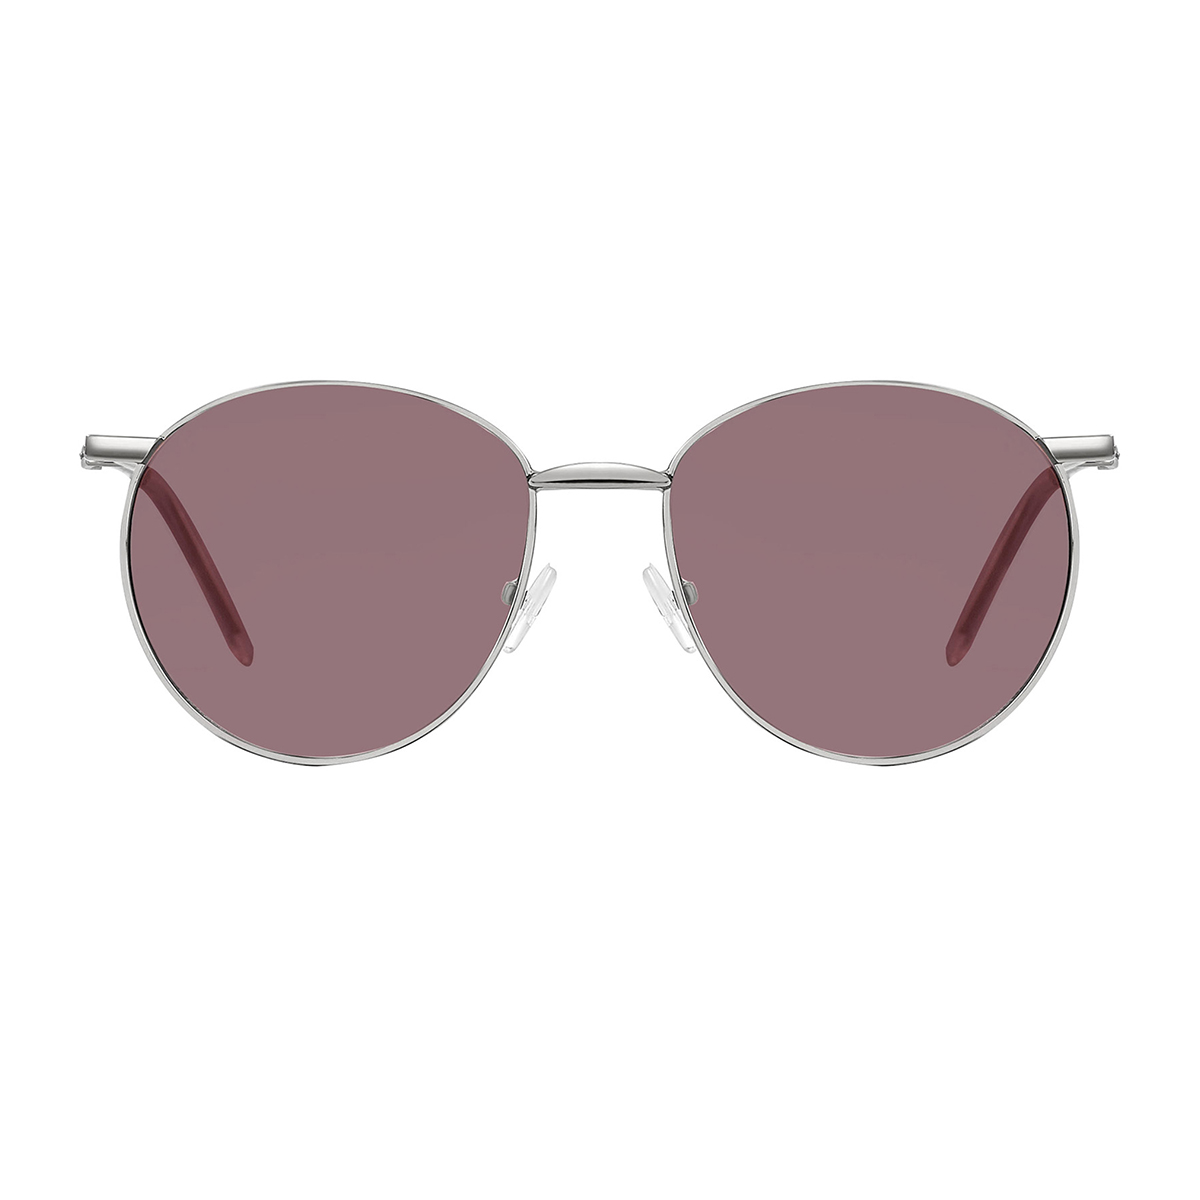 round silver1 sunglasses